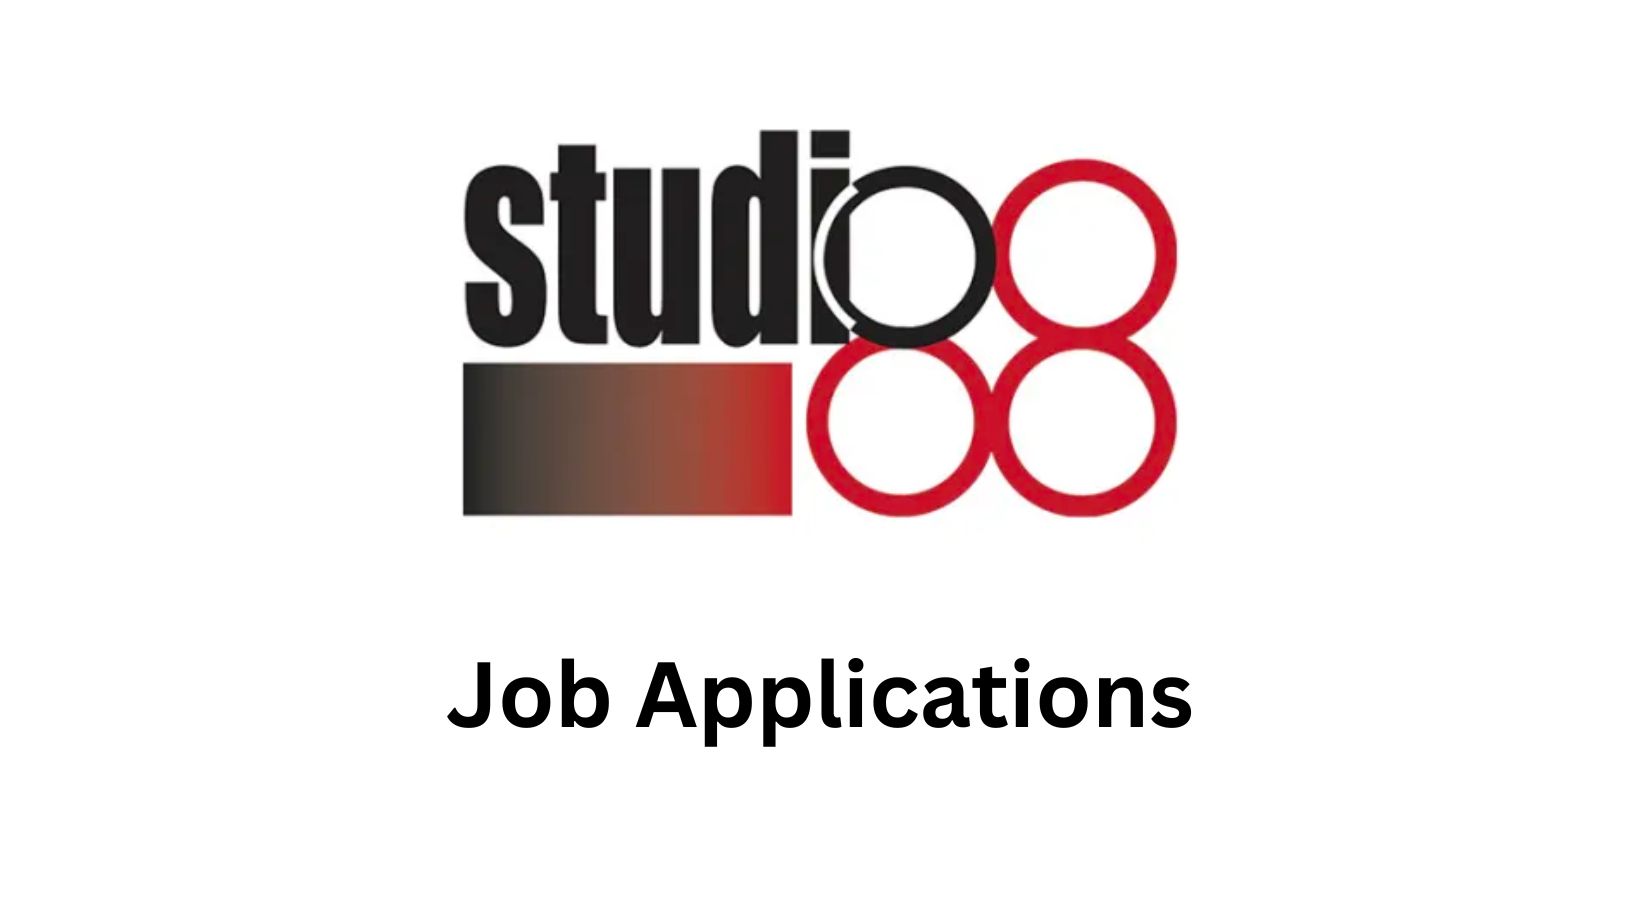 Studio 88 Job Applications